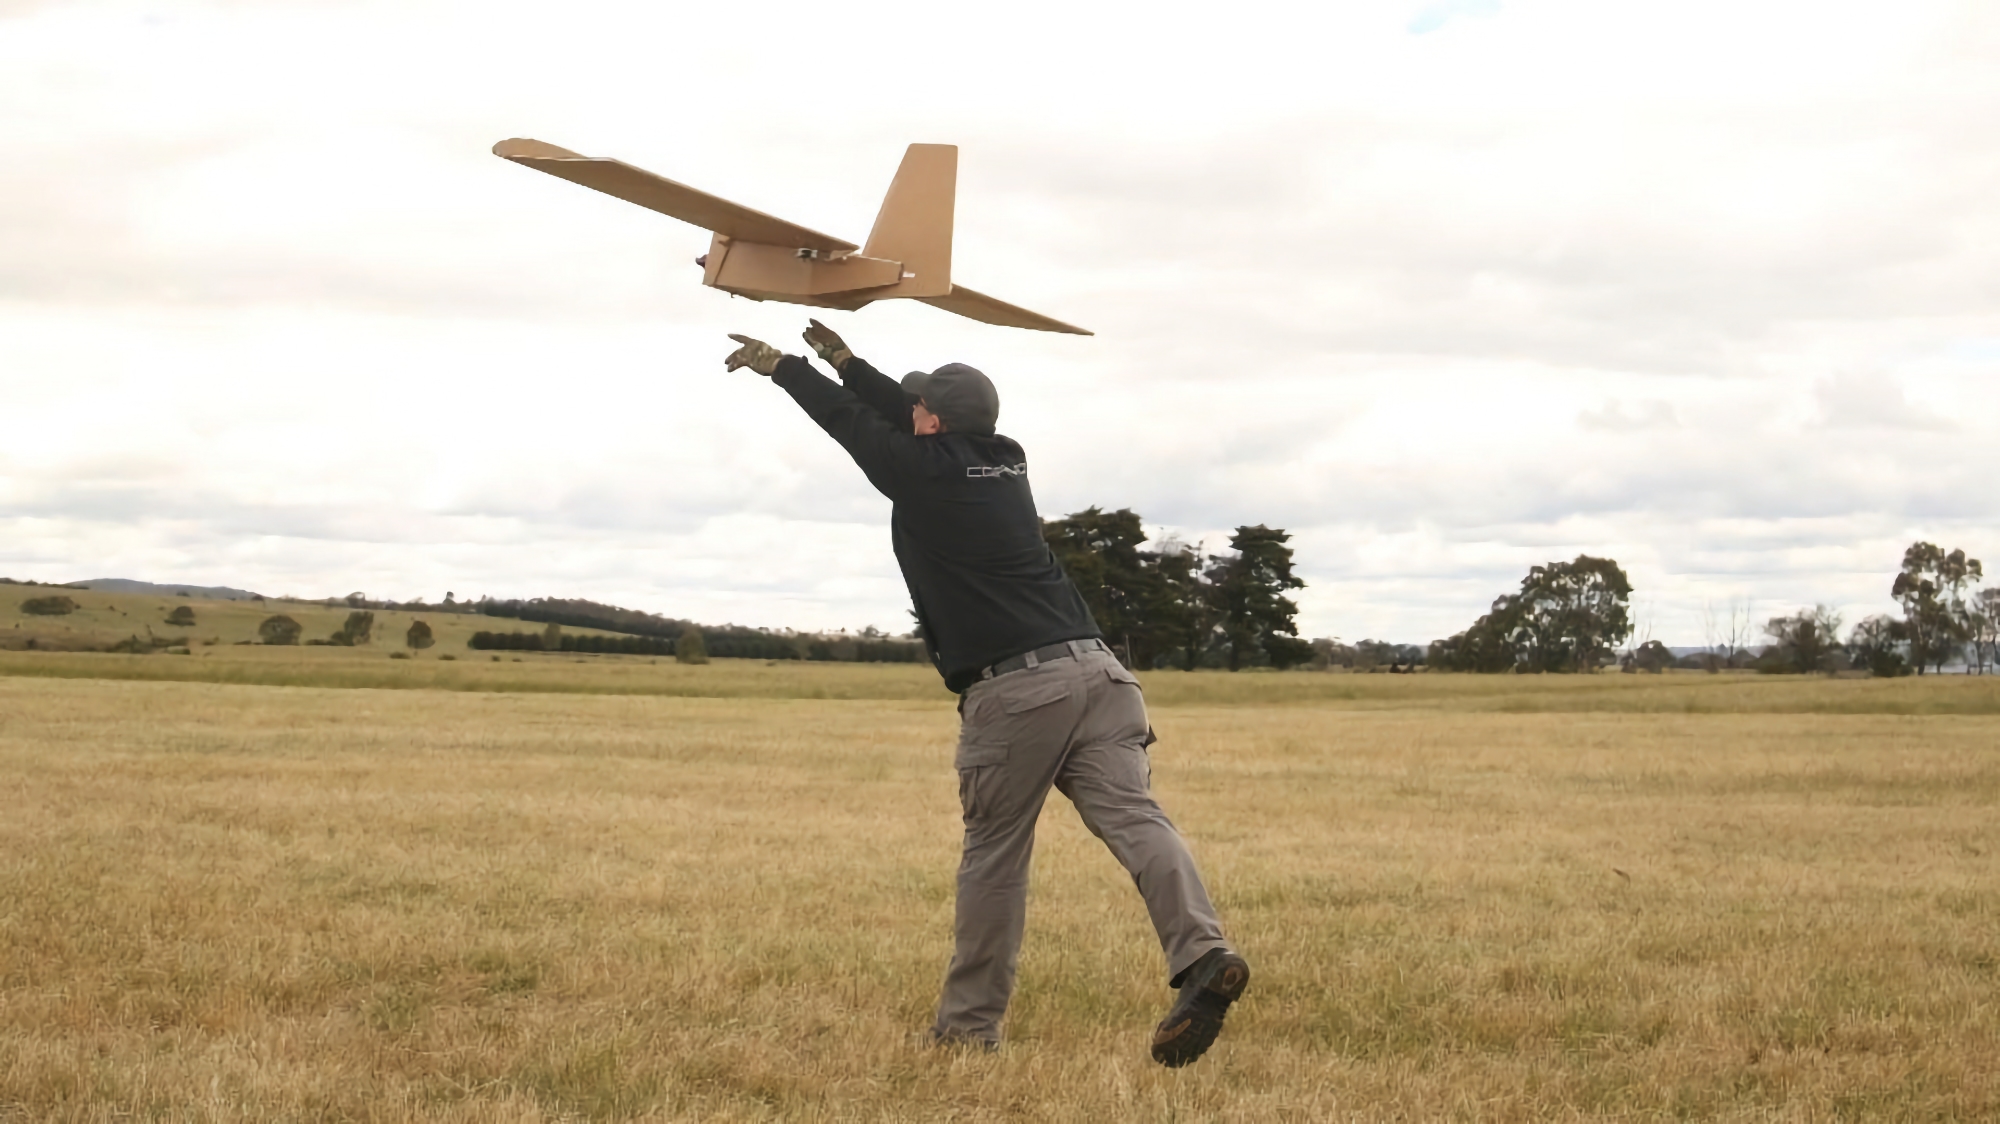 L'AFU utilise des drones PPDS jetables australiens à l'avant. Ils sont fabriqués en carton et peuvent transporter une charge utile allant jusqu'à 5 kg et voler sur une distance de 120 km.